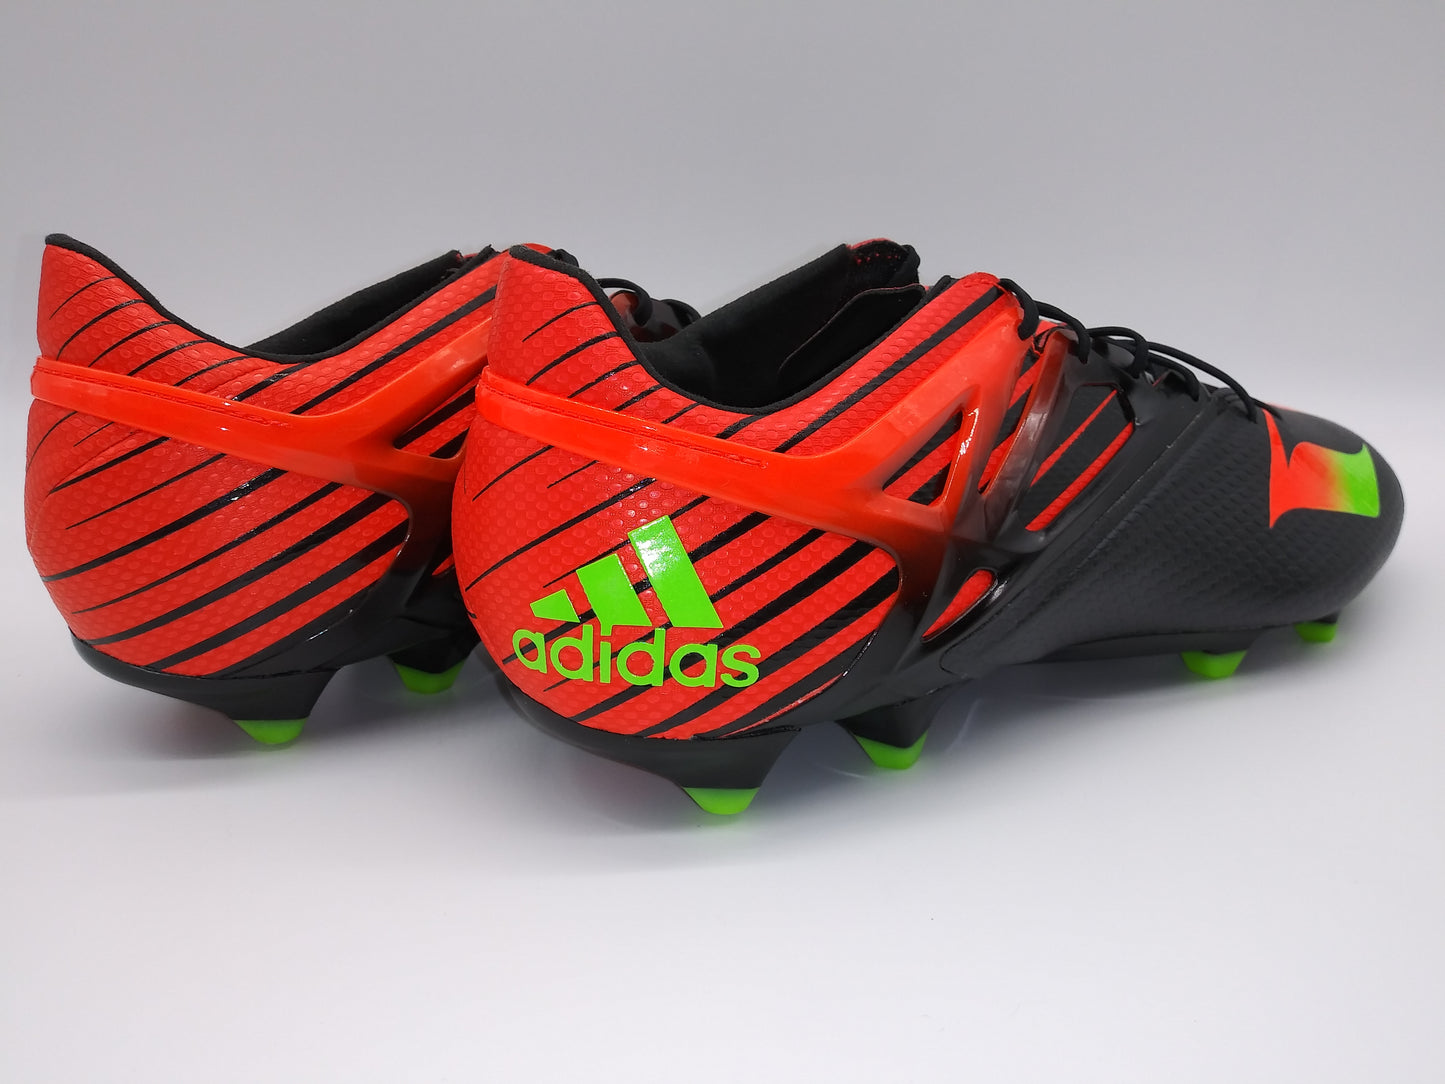 Adidas Messi 15.1 AF4654 Black Red